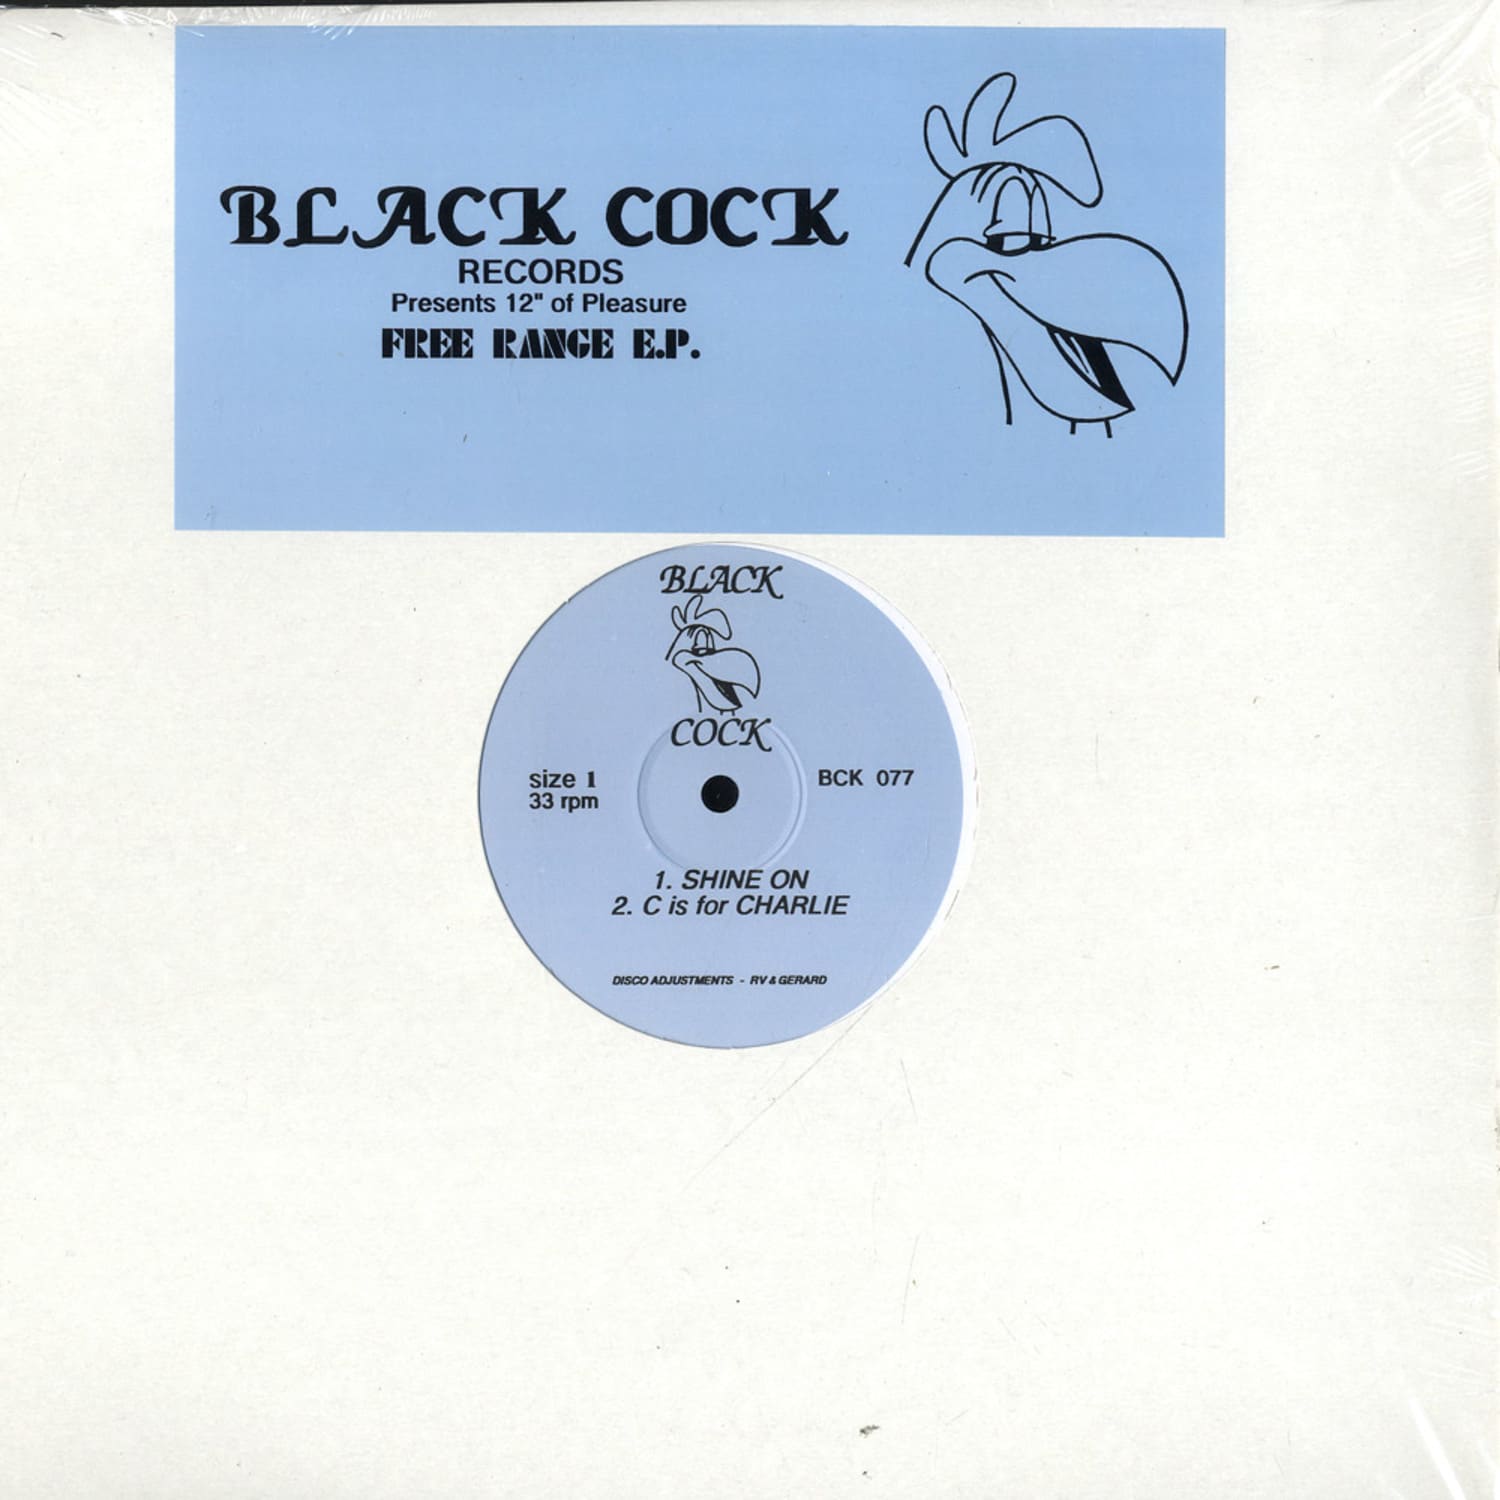 Black Cock - FREE RANGE EP